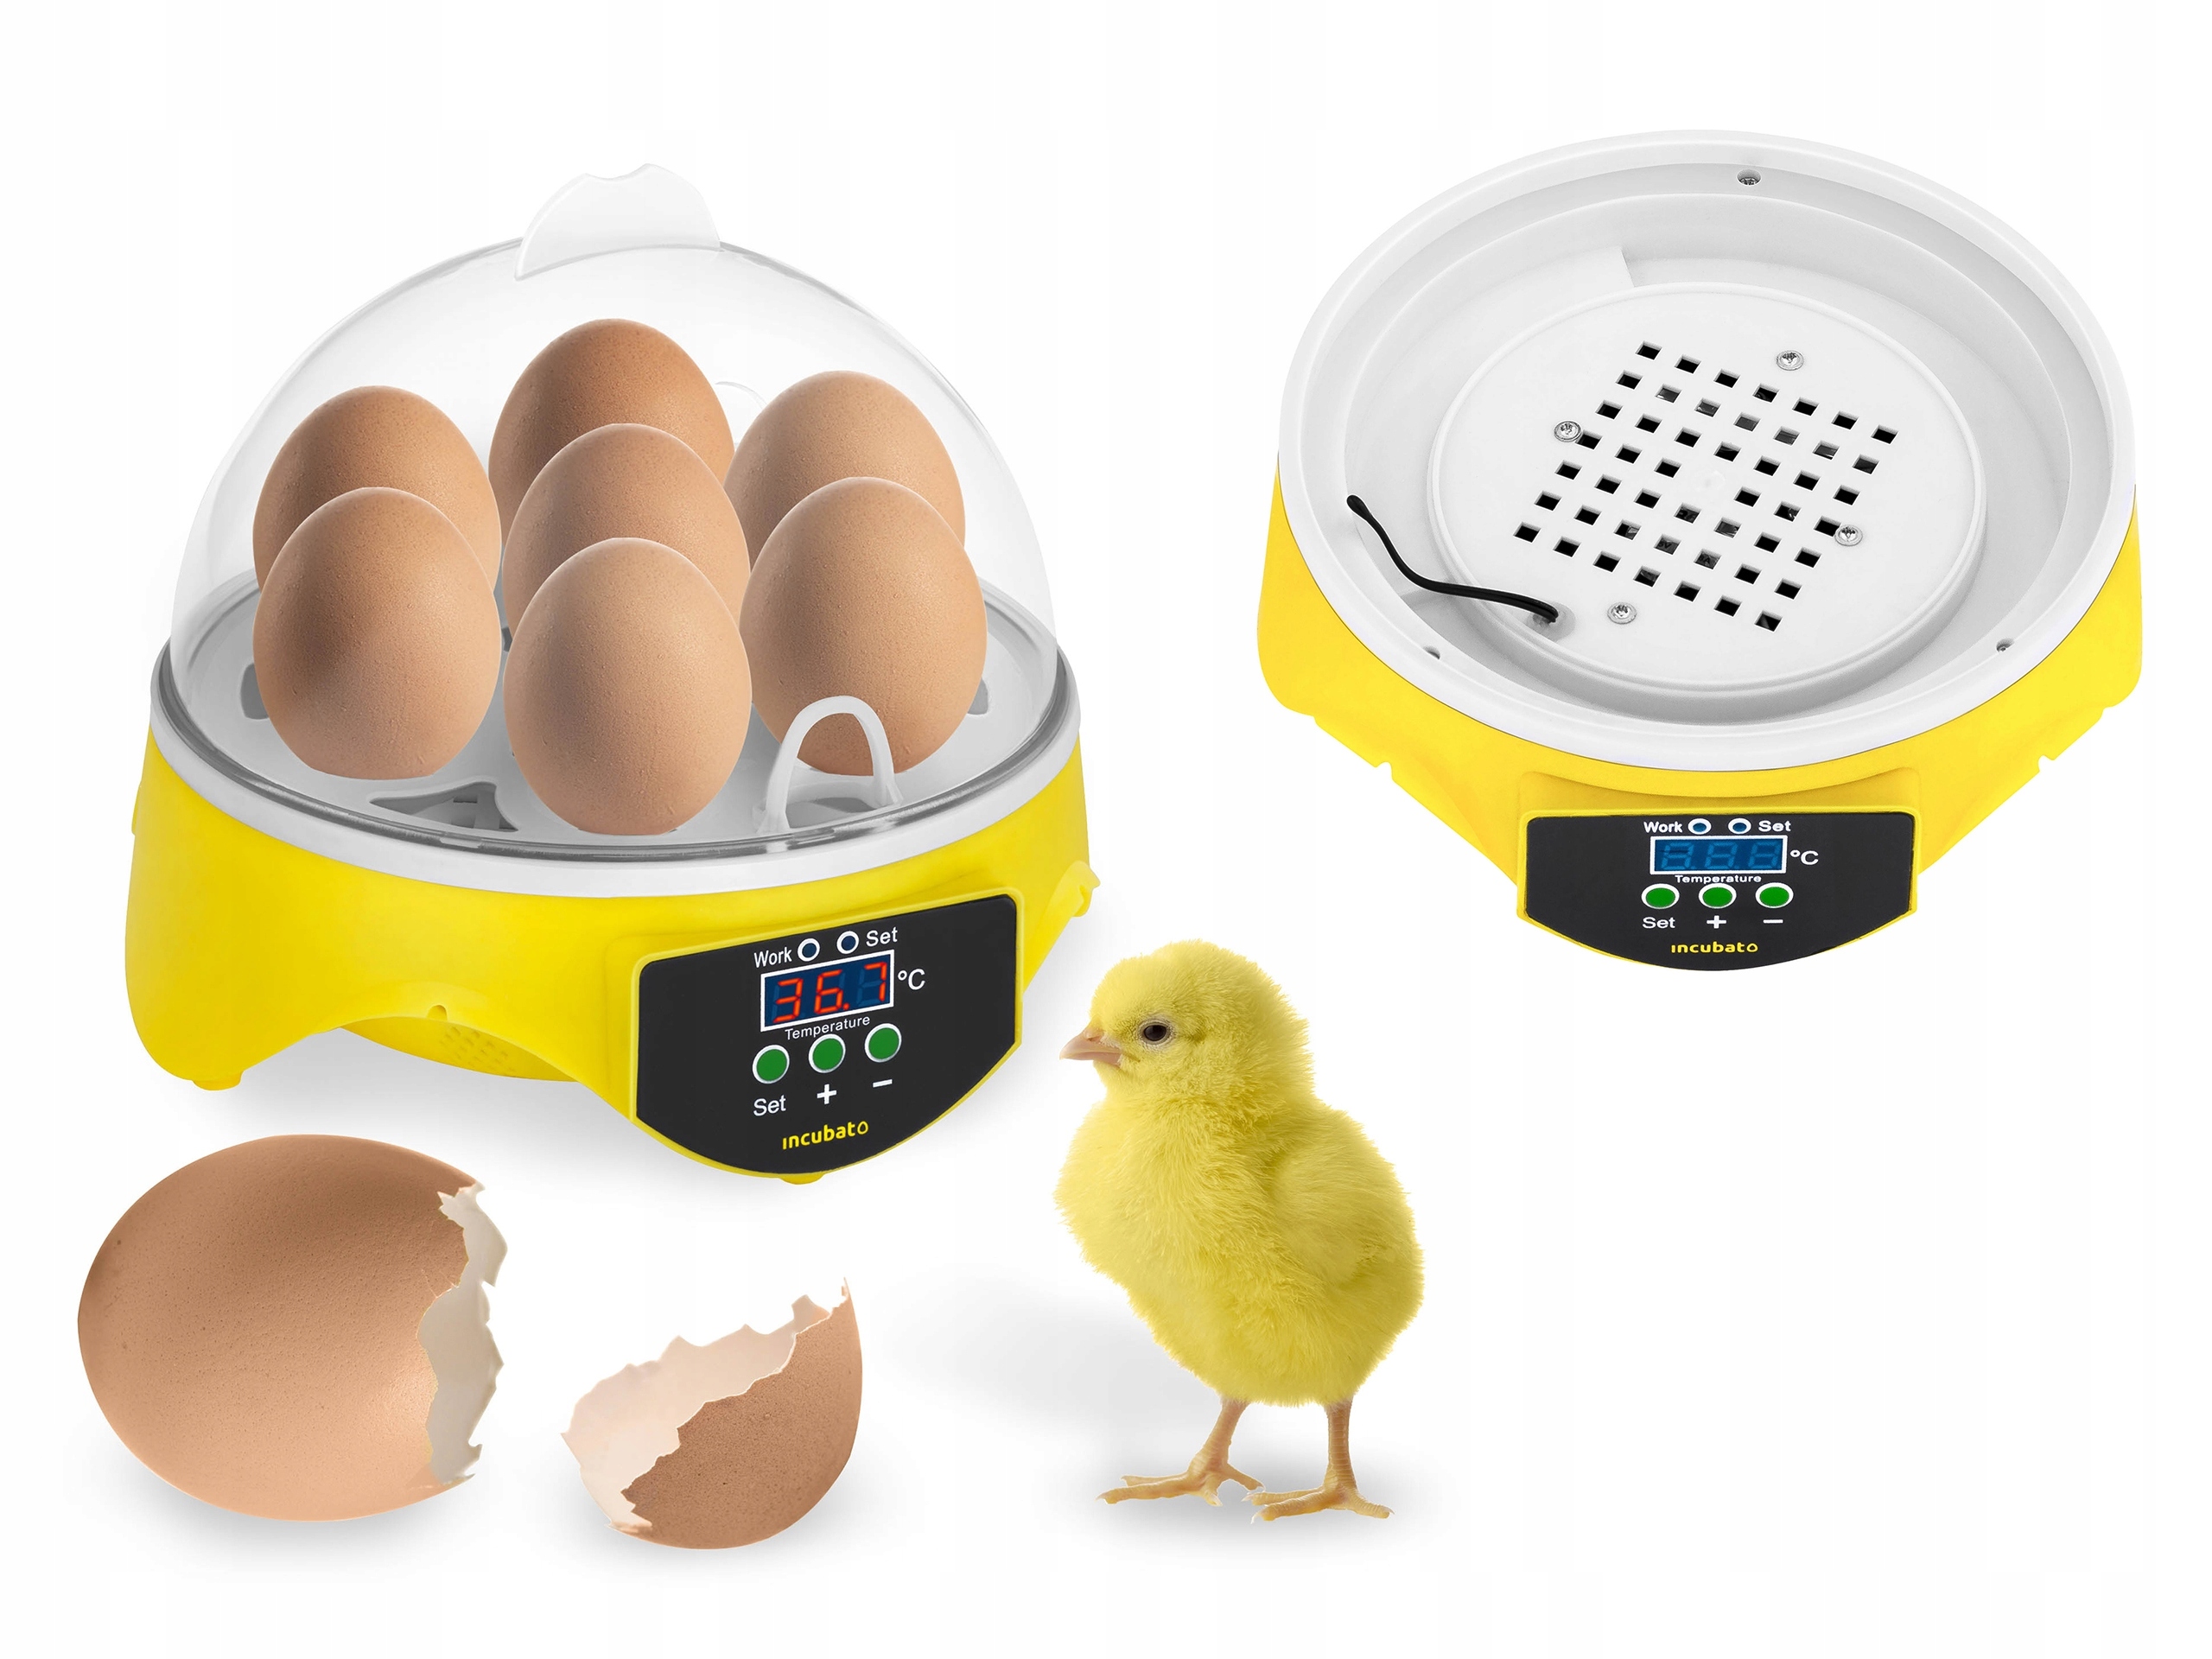 Купить инкубаторы кур. Инкубатор для яиц Egg incubator. Инкубатор Egg incubator 6 яиц. Mini Egg incubator на 12 яиц. Инкубатор для яиц Egg incubator на 6 яиц.